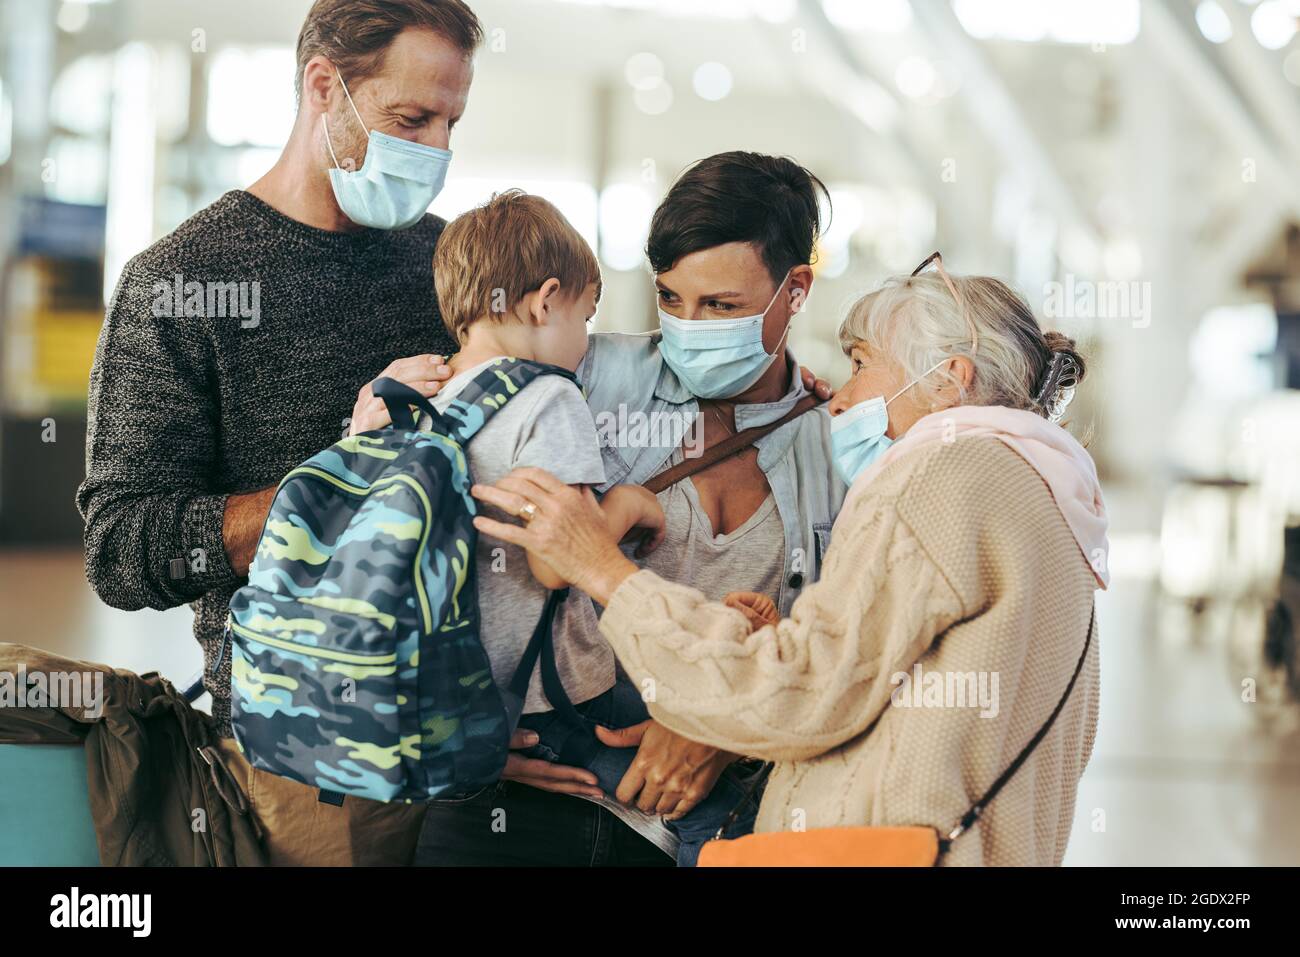 Oma trifft Familie am Flughafen nach langer pandemischer Sperre. Ältere Frau und Familie in Gesichtsmasken bei der Ankunft am Flughafen. Stockfoto